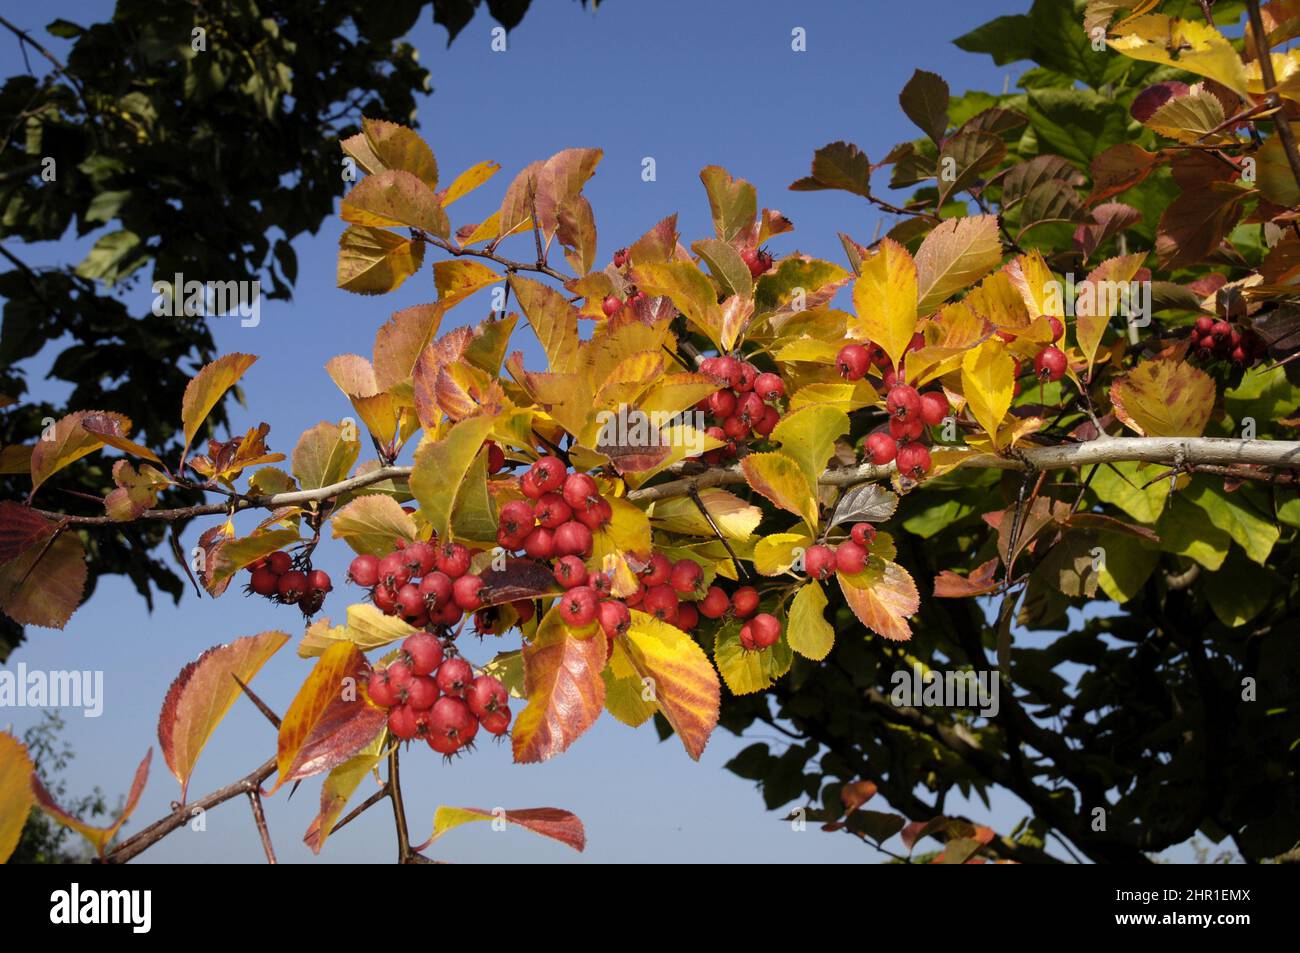 plum-leaved hawthorn (Crataegus persimilis, Crataegus prunifolia), branch with fruits in autumn Stock Photo